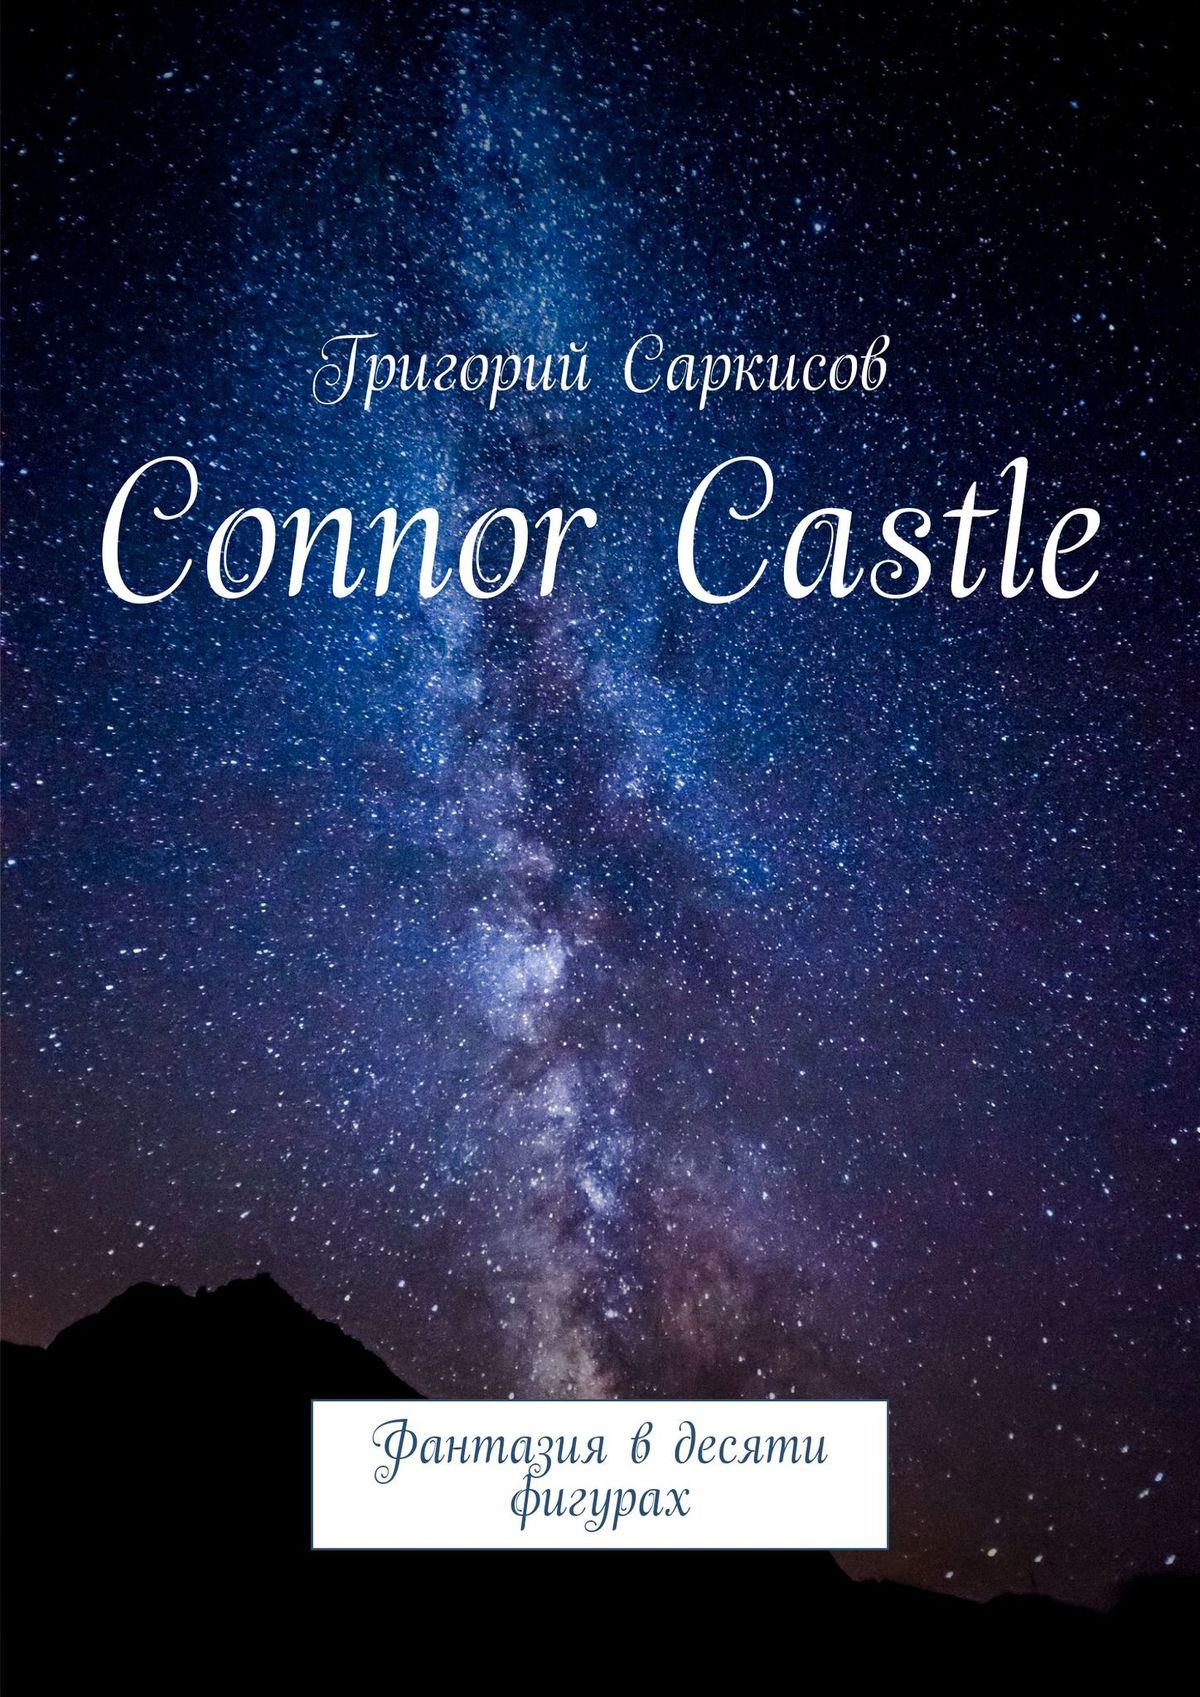 Connor Castle